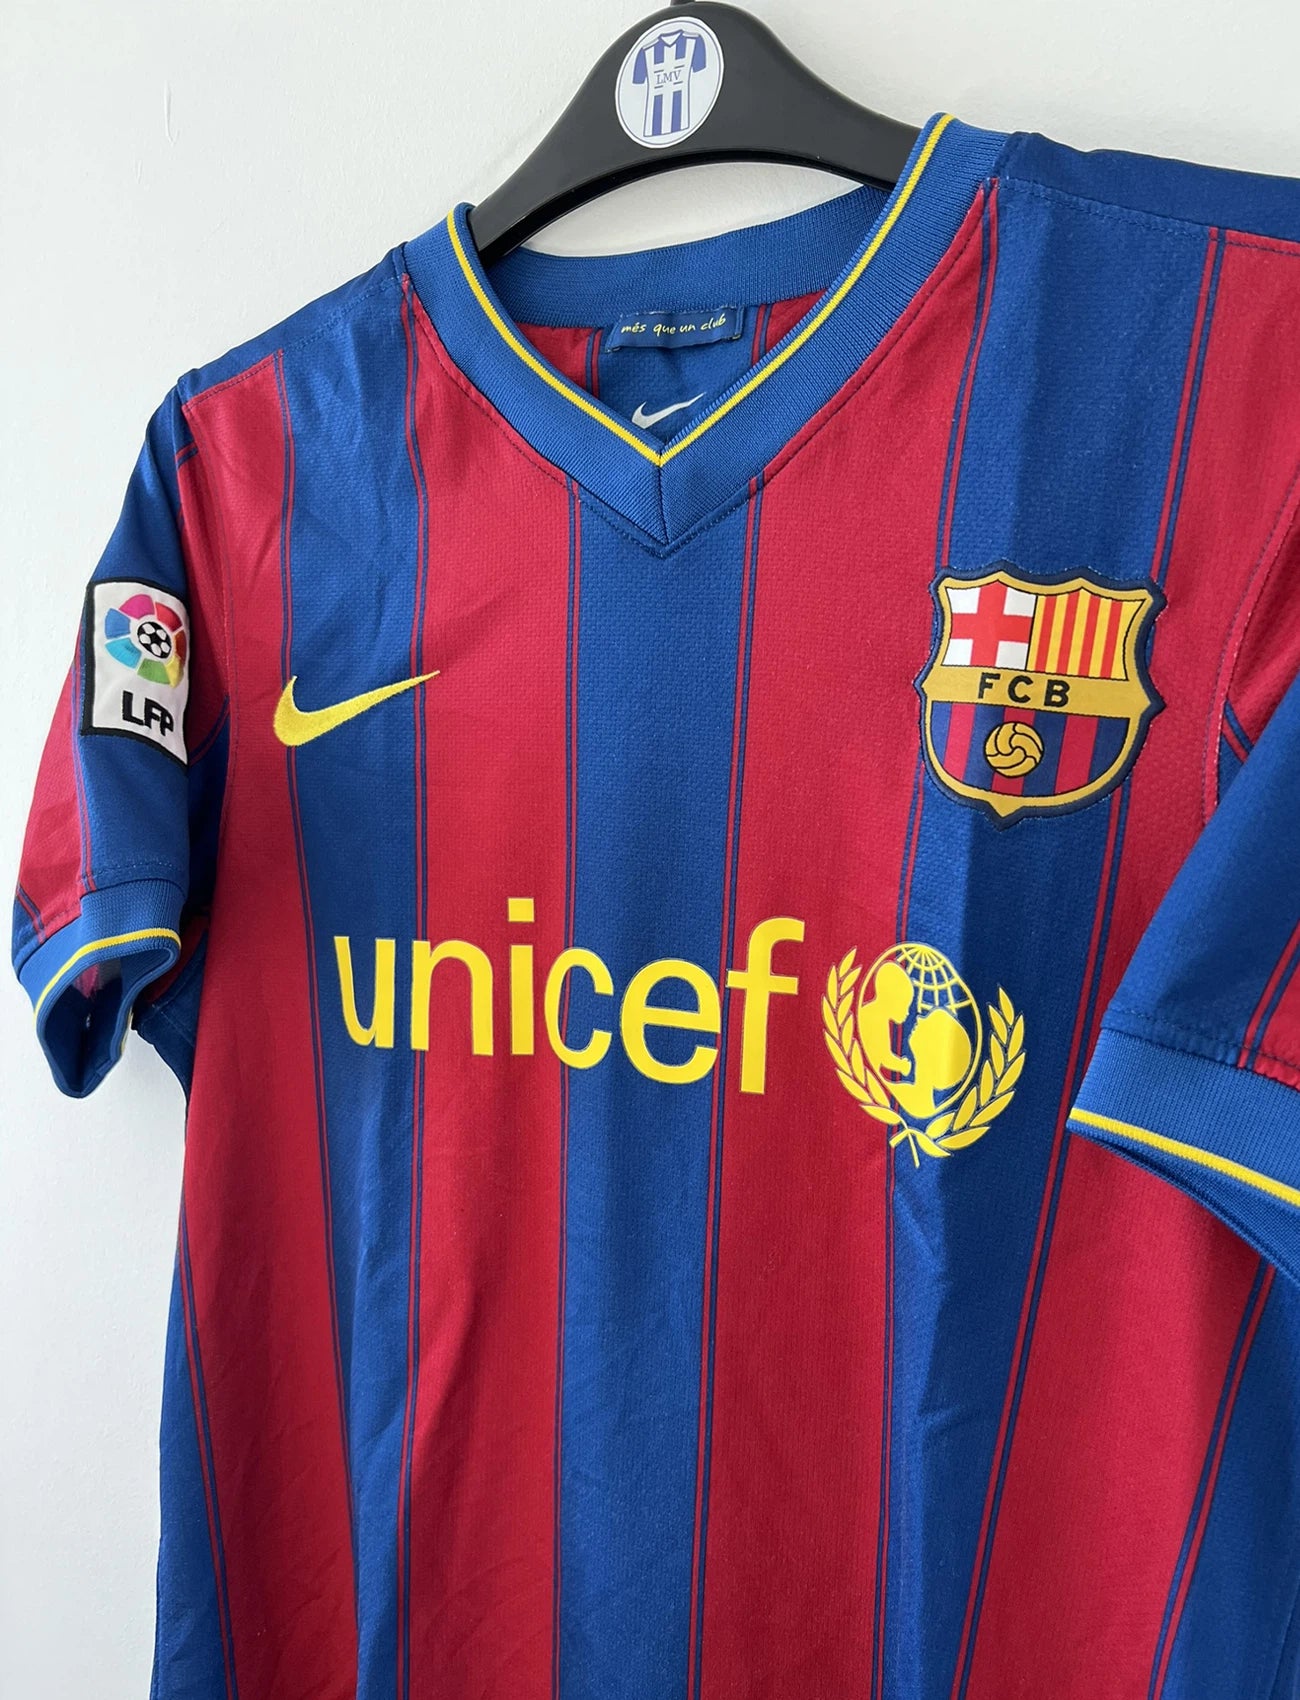 Maillot de foot vintage du FC Barcelone 2009-2010. Il s'agit du maillot domicile de couleur rouge et bleu. On peut retrouver l'équipementier nike et le sponsor unicef. Il s'agit d'un authentique comportant les numéros 343808-496.